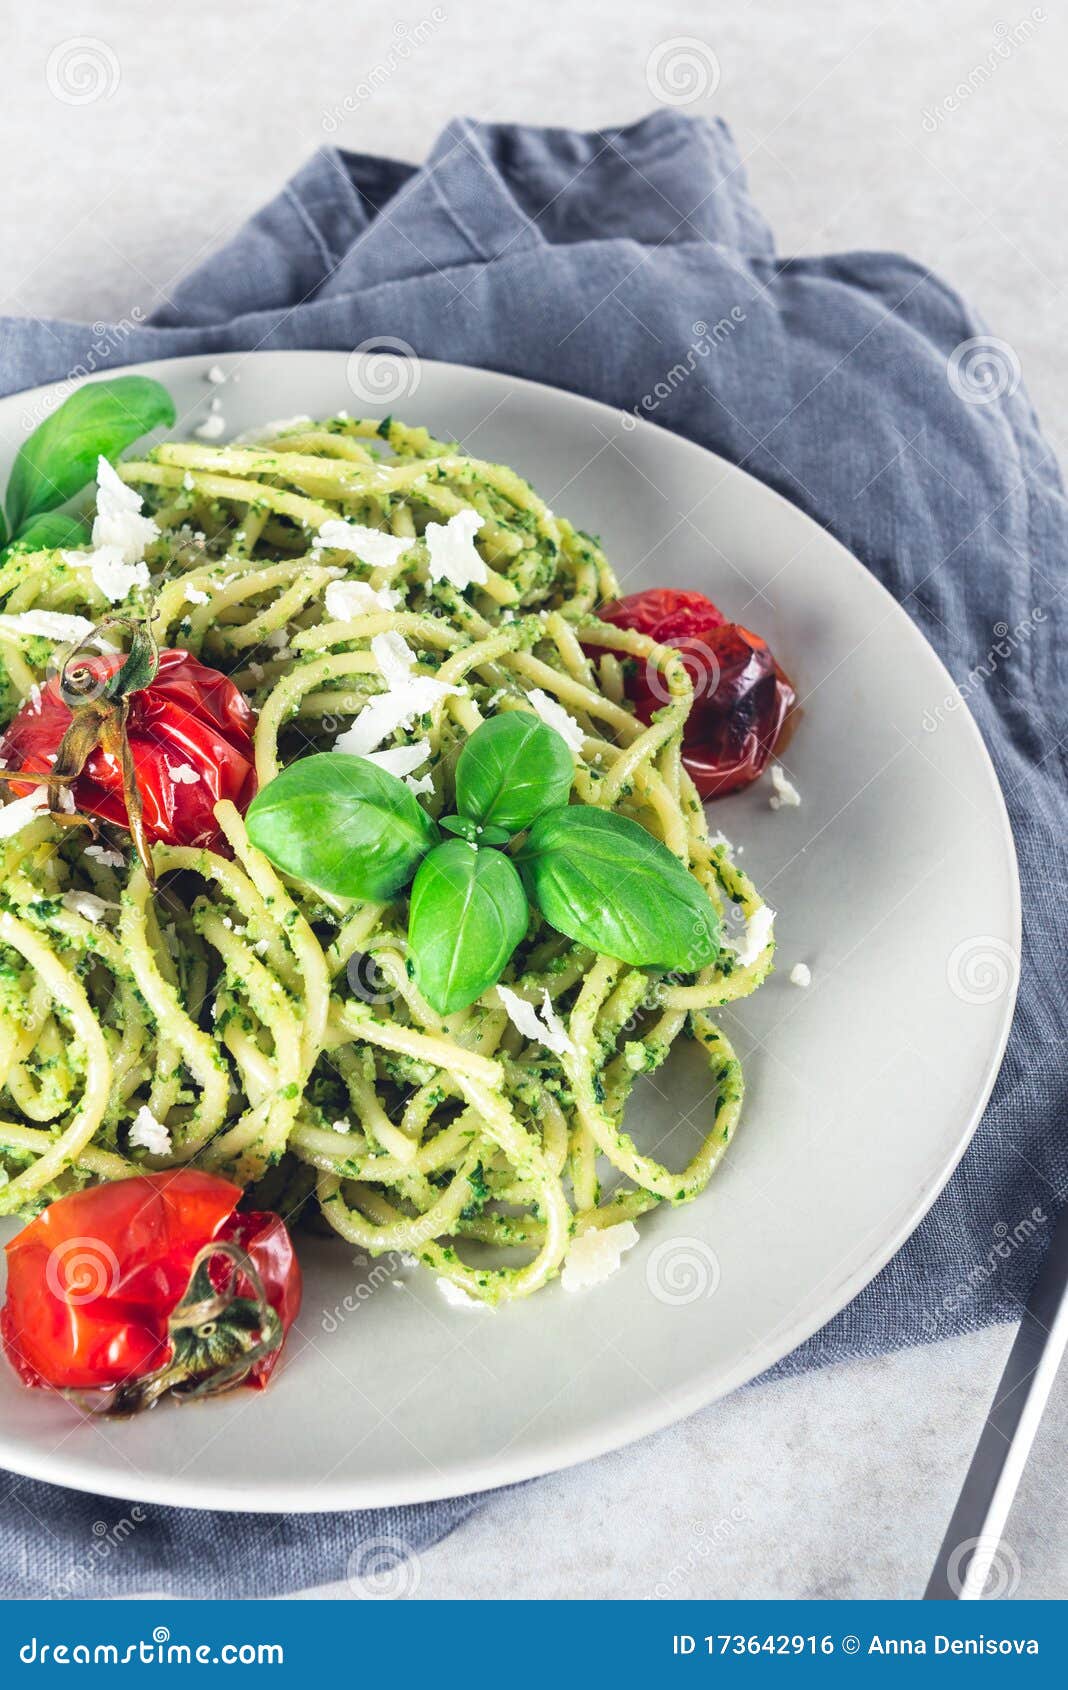 Spaghetti with pesto sauce stock photo. Image of gourmet - 173642916